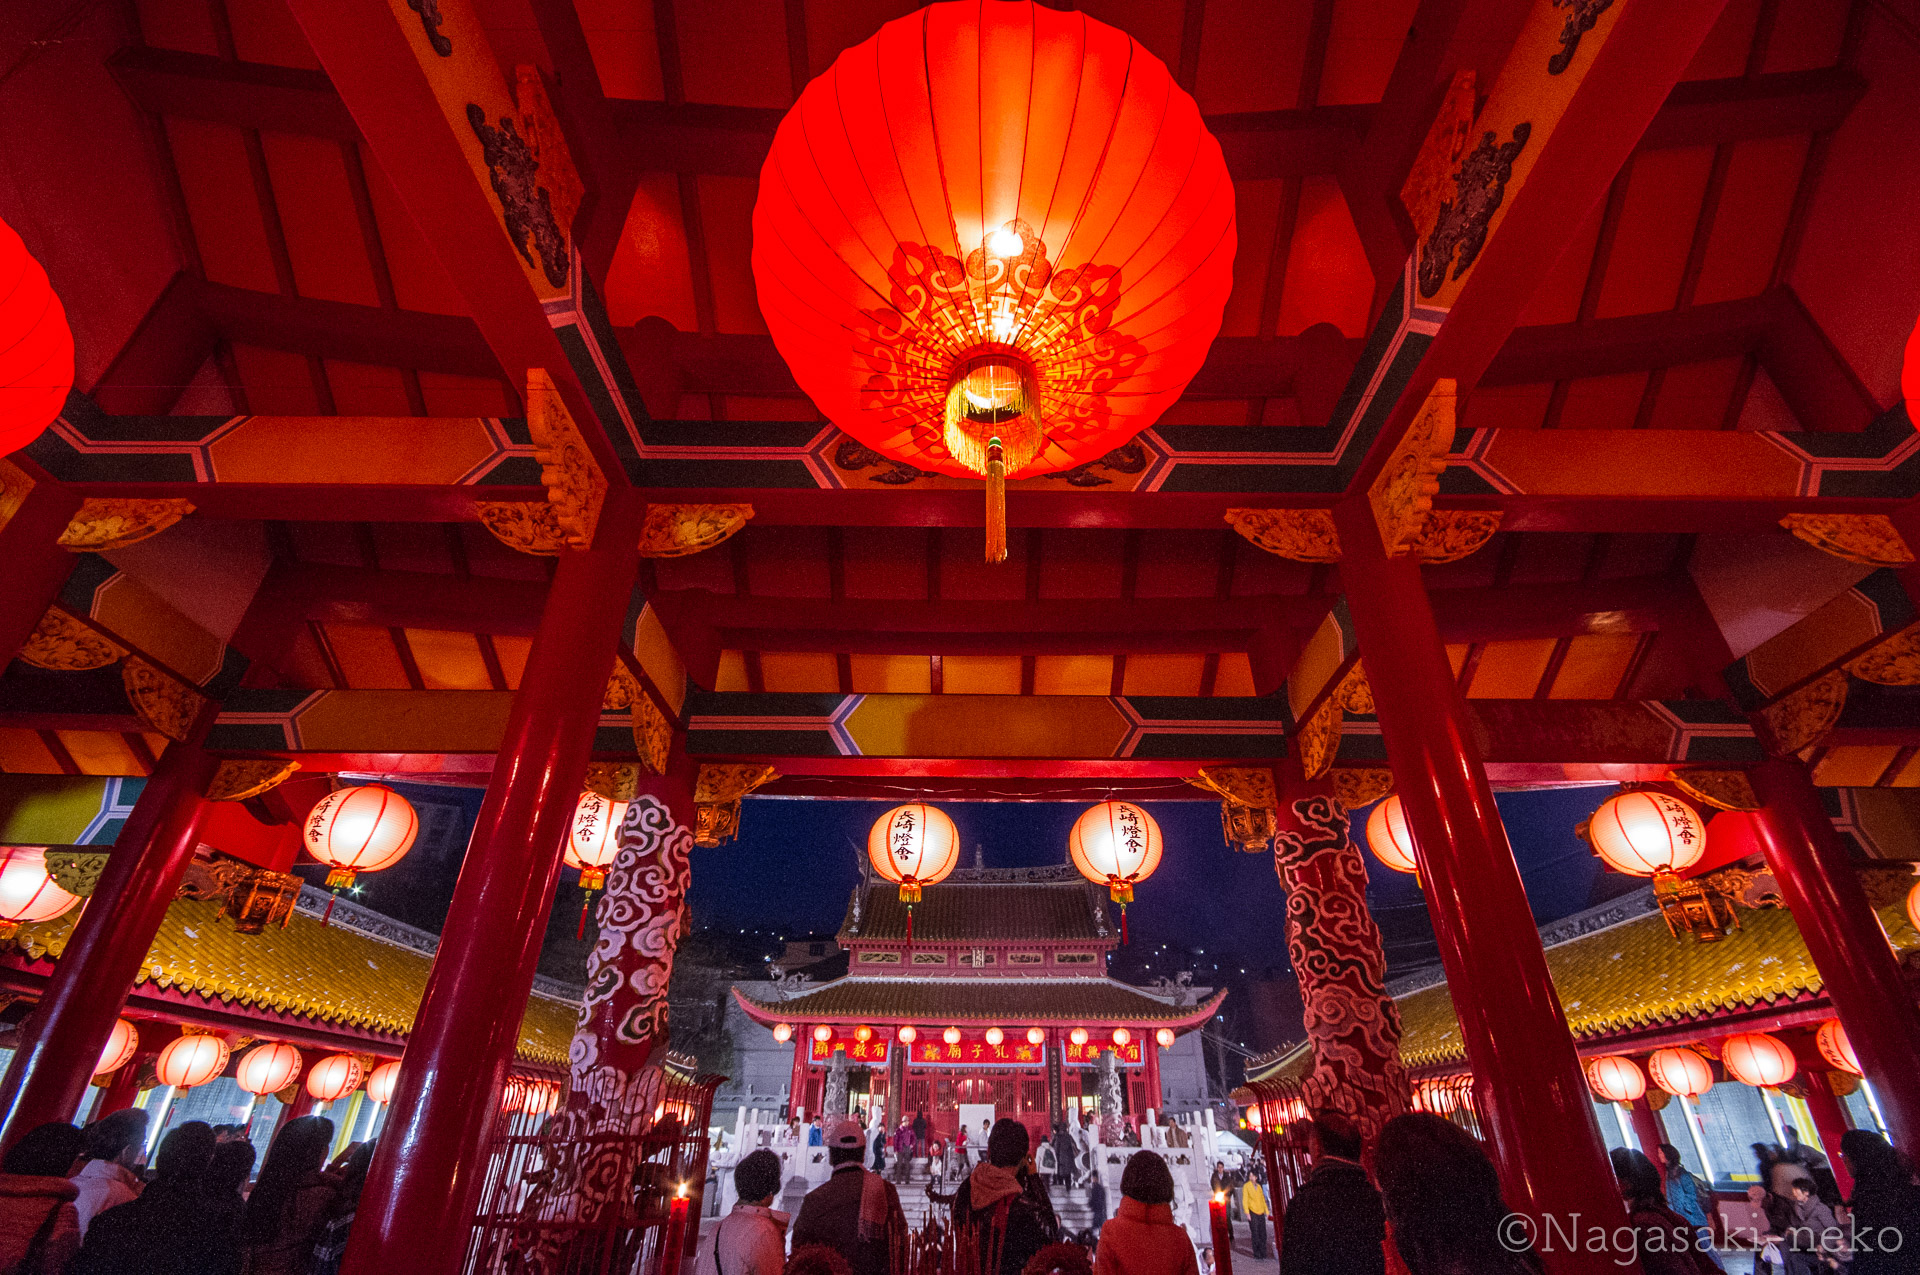 Confucius Temple and Lantern